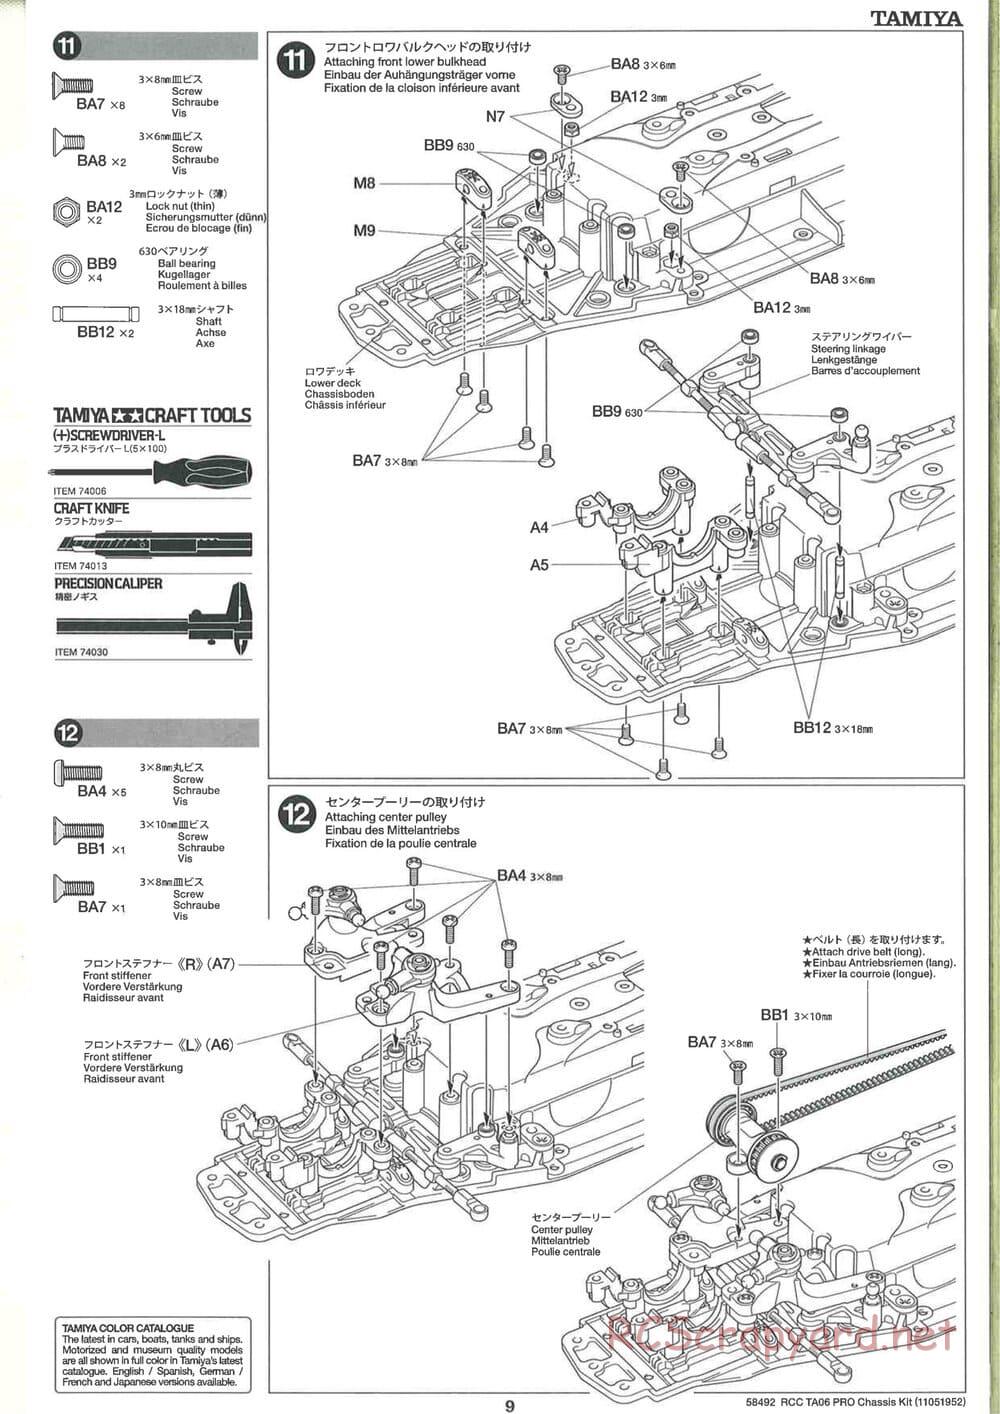 Tamiya - TA06 Pro Chassis - Manual - Page 9